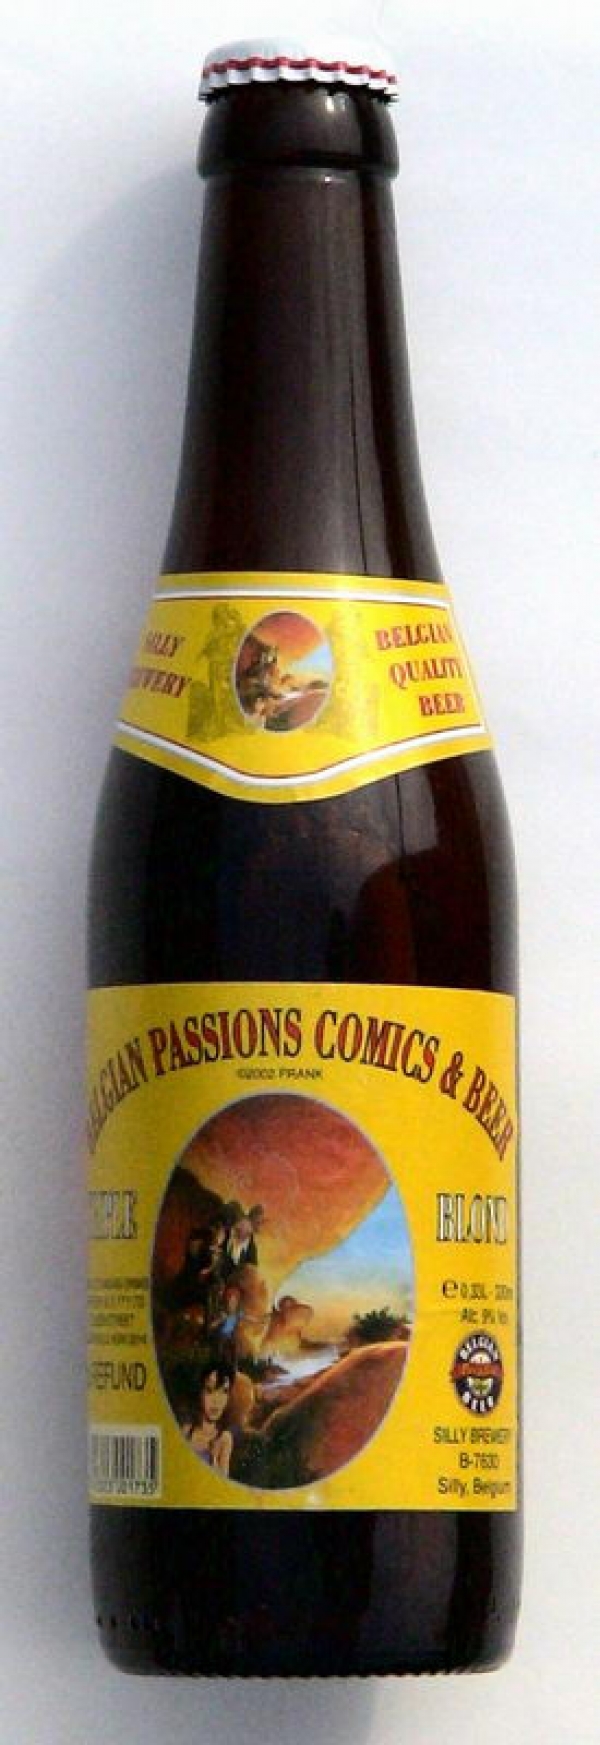 Belgian passions comics et beer